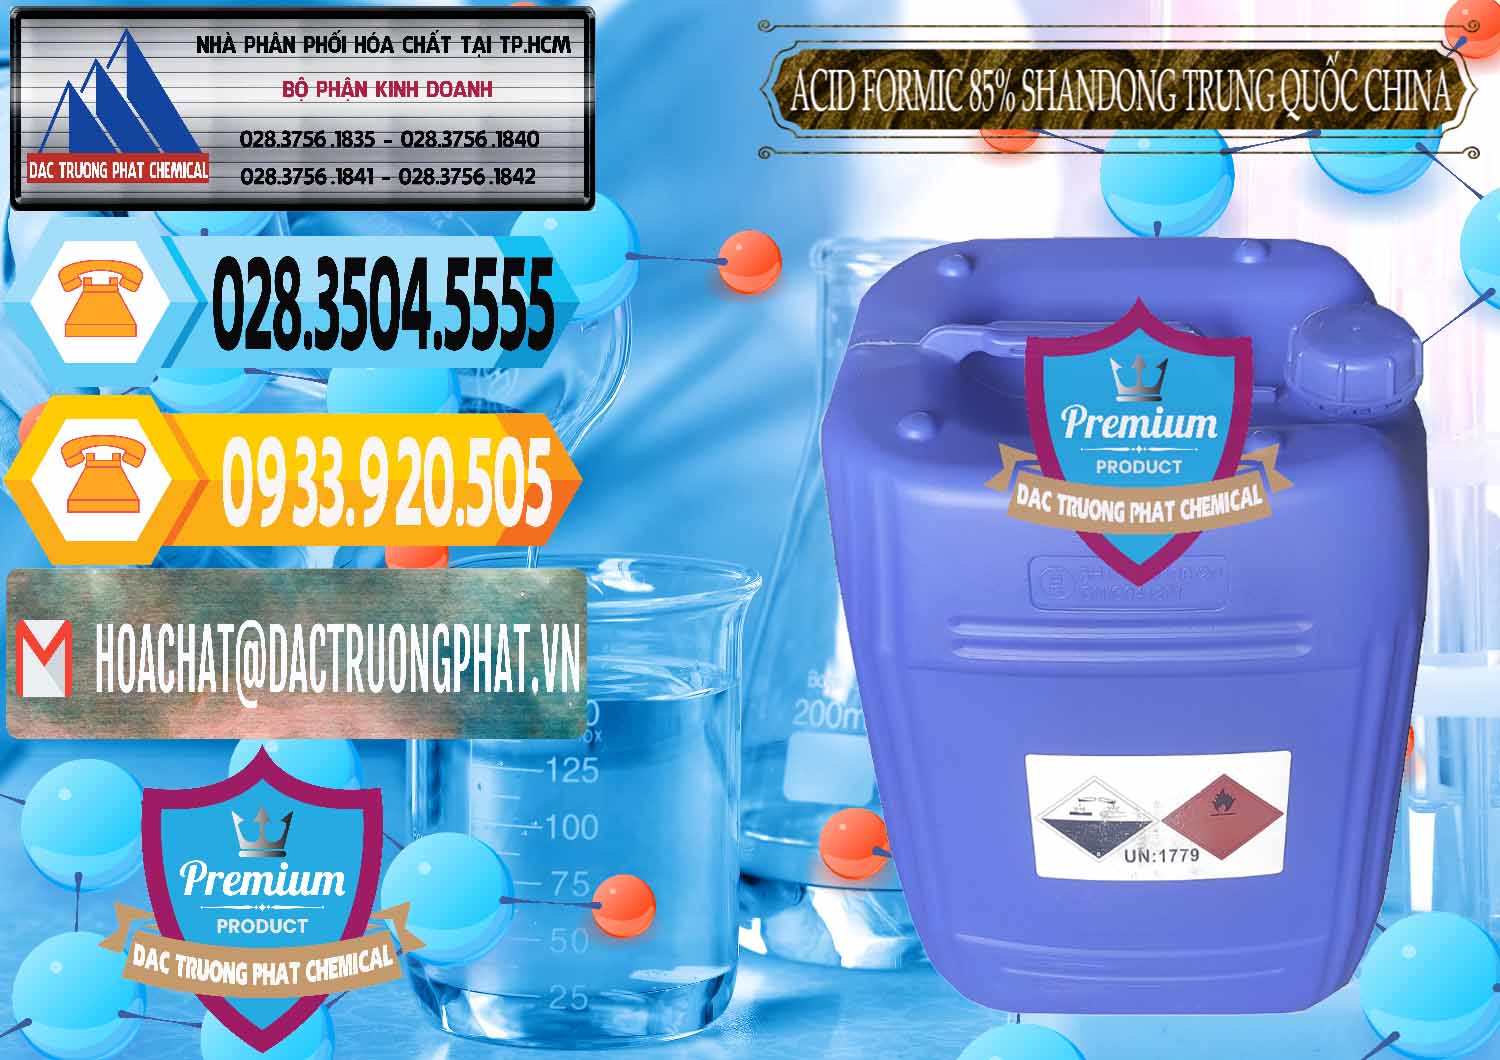 Đơn vị chuyên bán - cung ứng Acid Formic - Axit Formic 85% Shandong Trung Quốc China - 0235 - Bán và cung cấp hóa chất tại TP.HCM - hoachattayrua.net